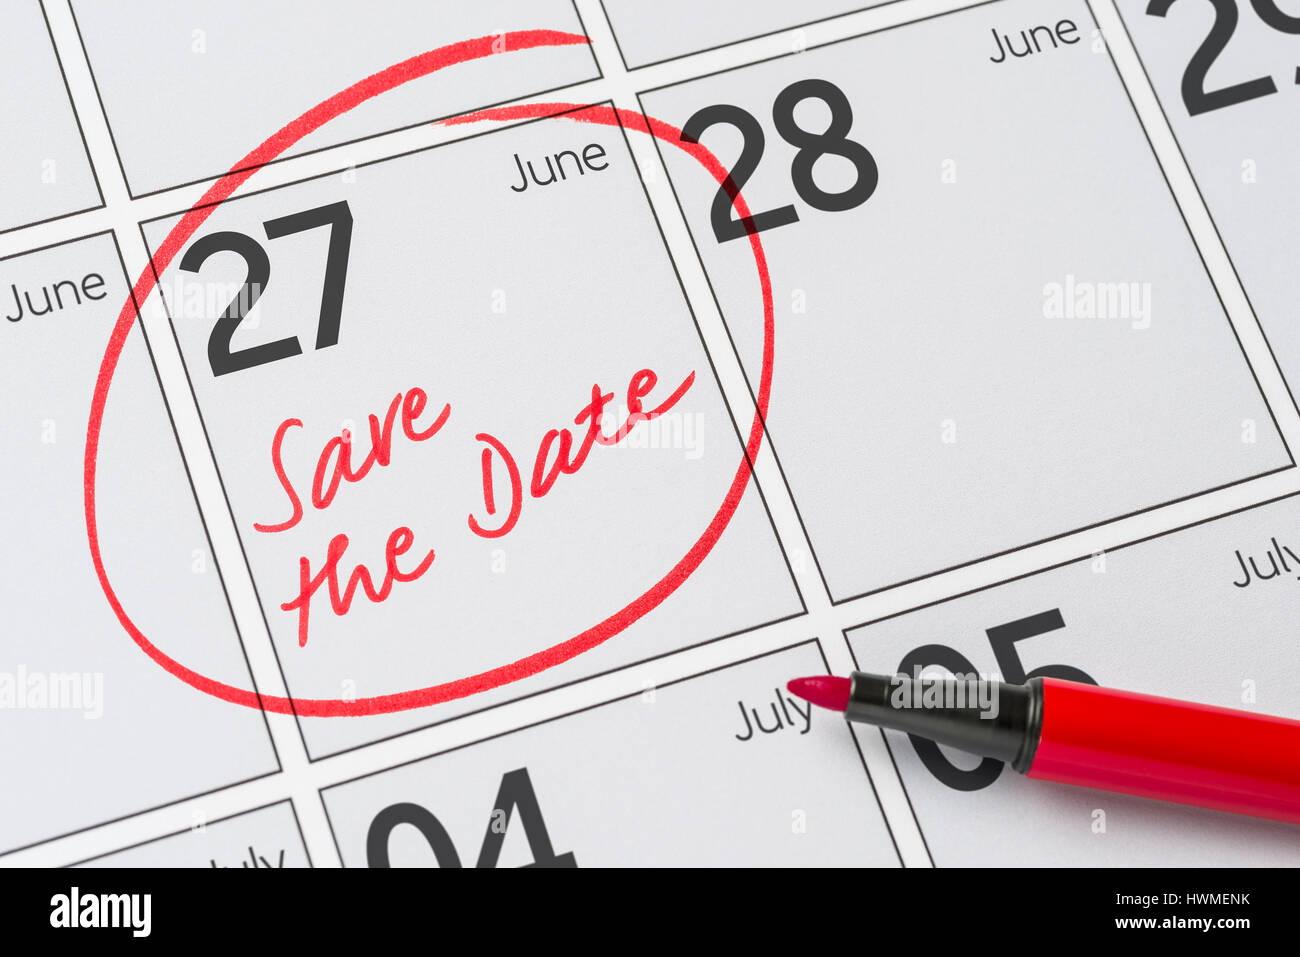 Enregistrer la date inscrite sur un calendrier - 27 juin Banque D'Images